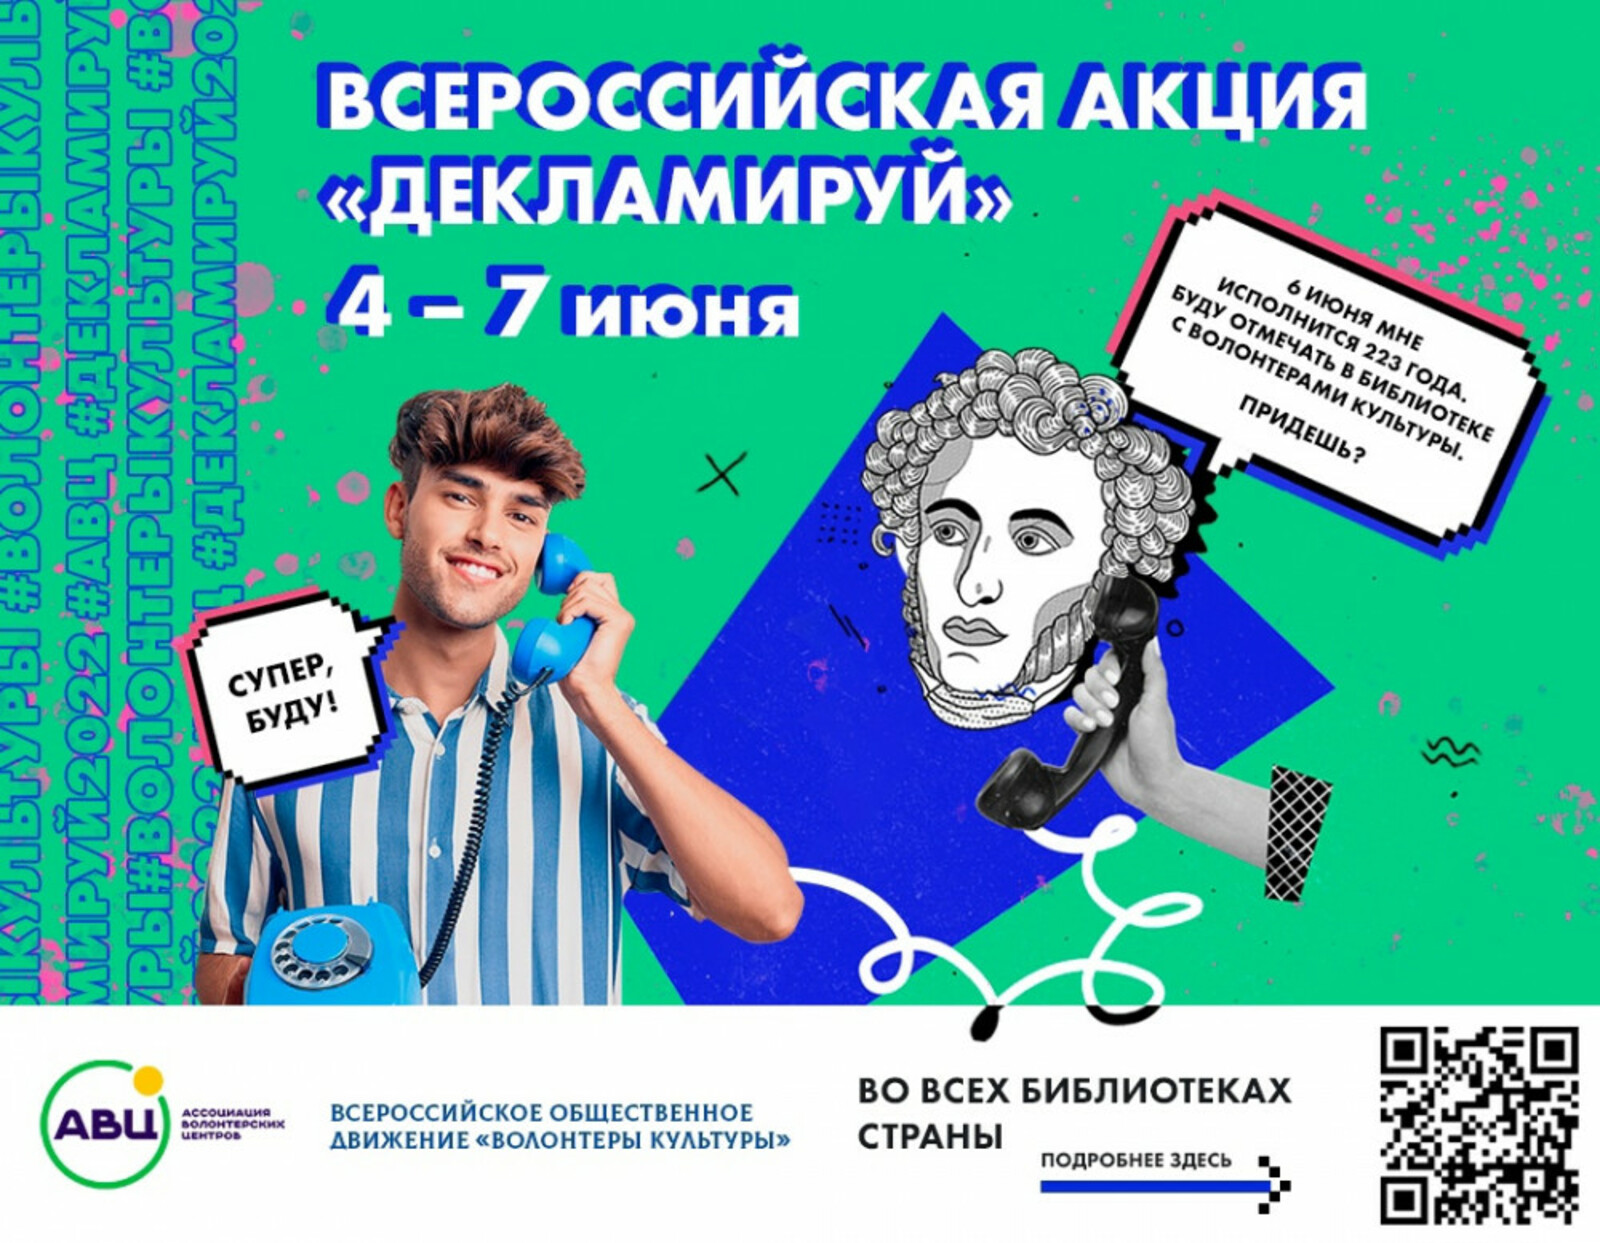 Библиотеки Башкортостана приняли участие во Всероссийской акции «Декламируй», посвященной Дню русского языка